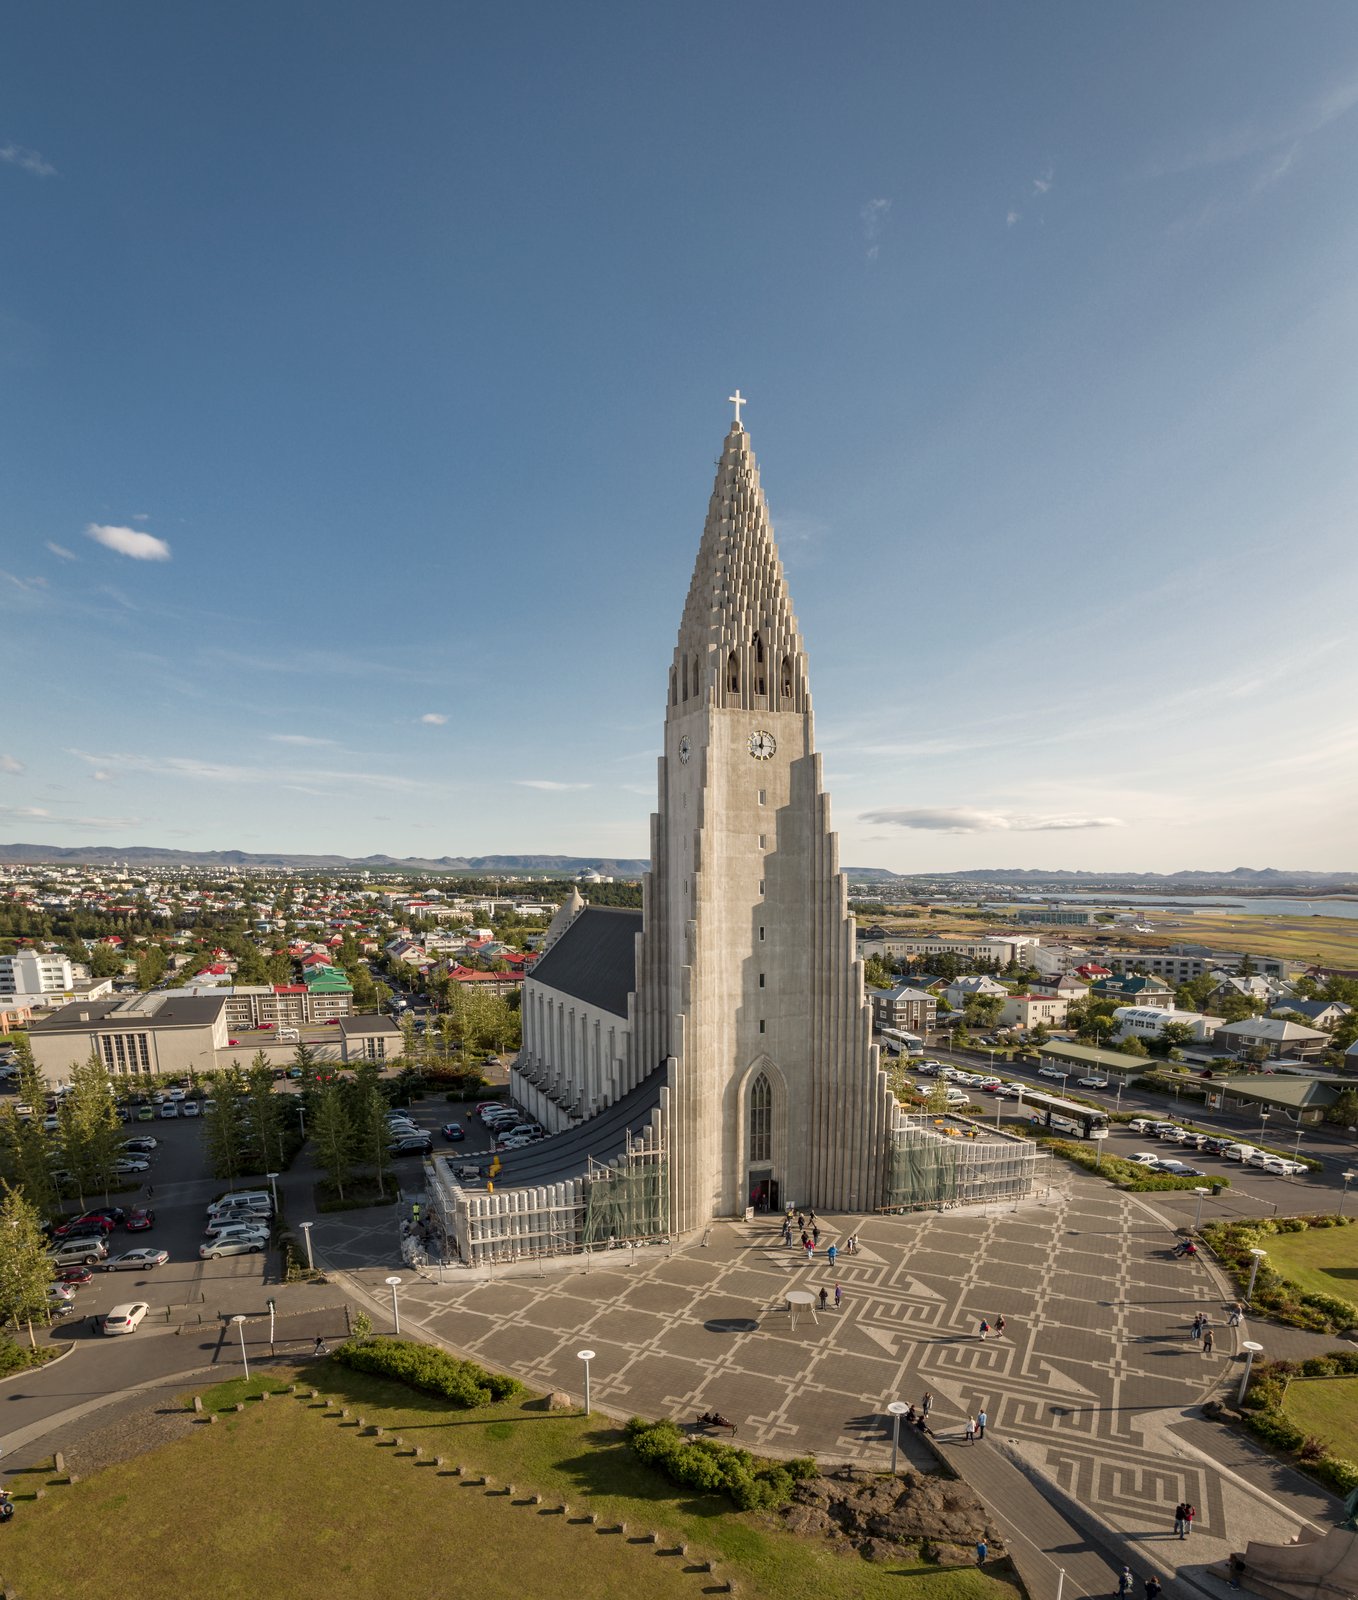 Copyright: Visit Reykjavík